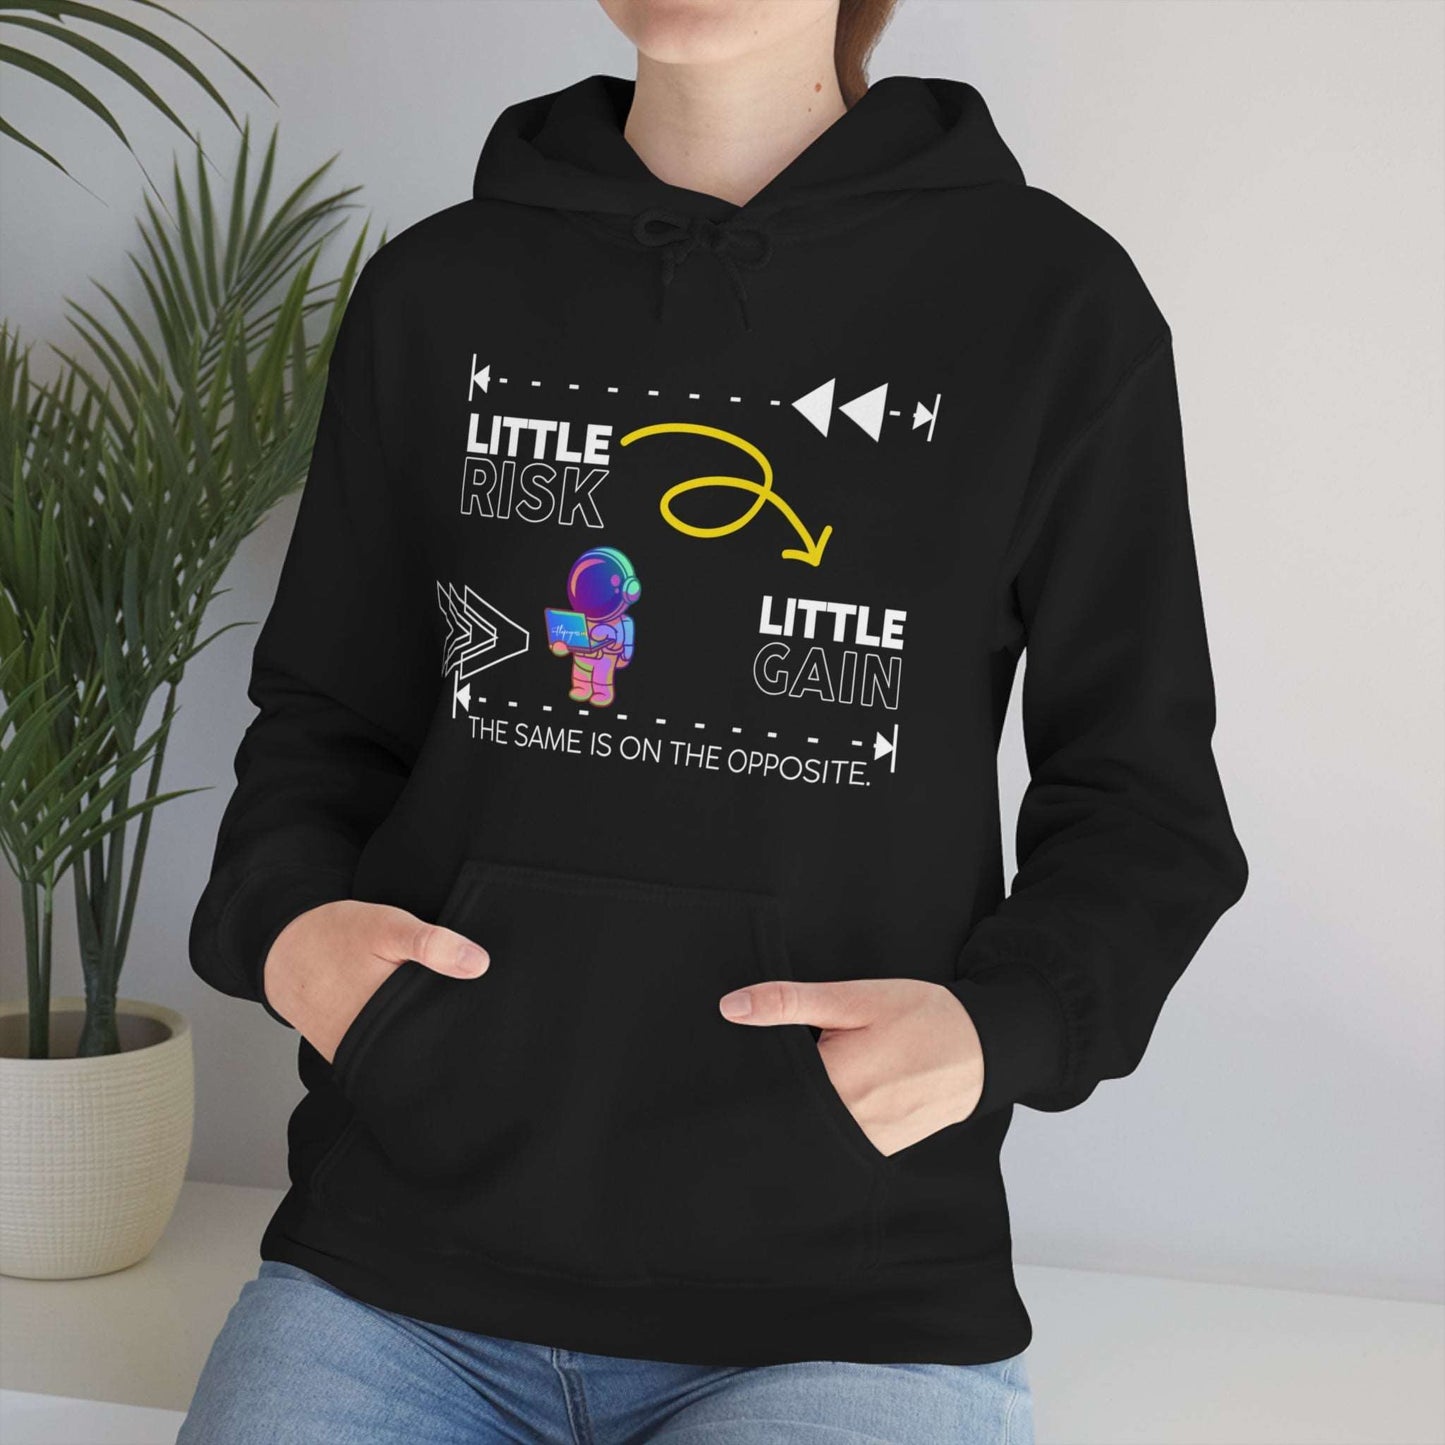 Little Risk, Little Gain | Heavy Blend Hooded Sweatshirt